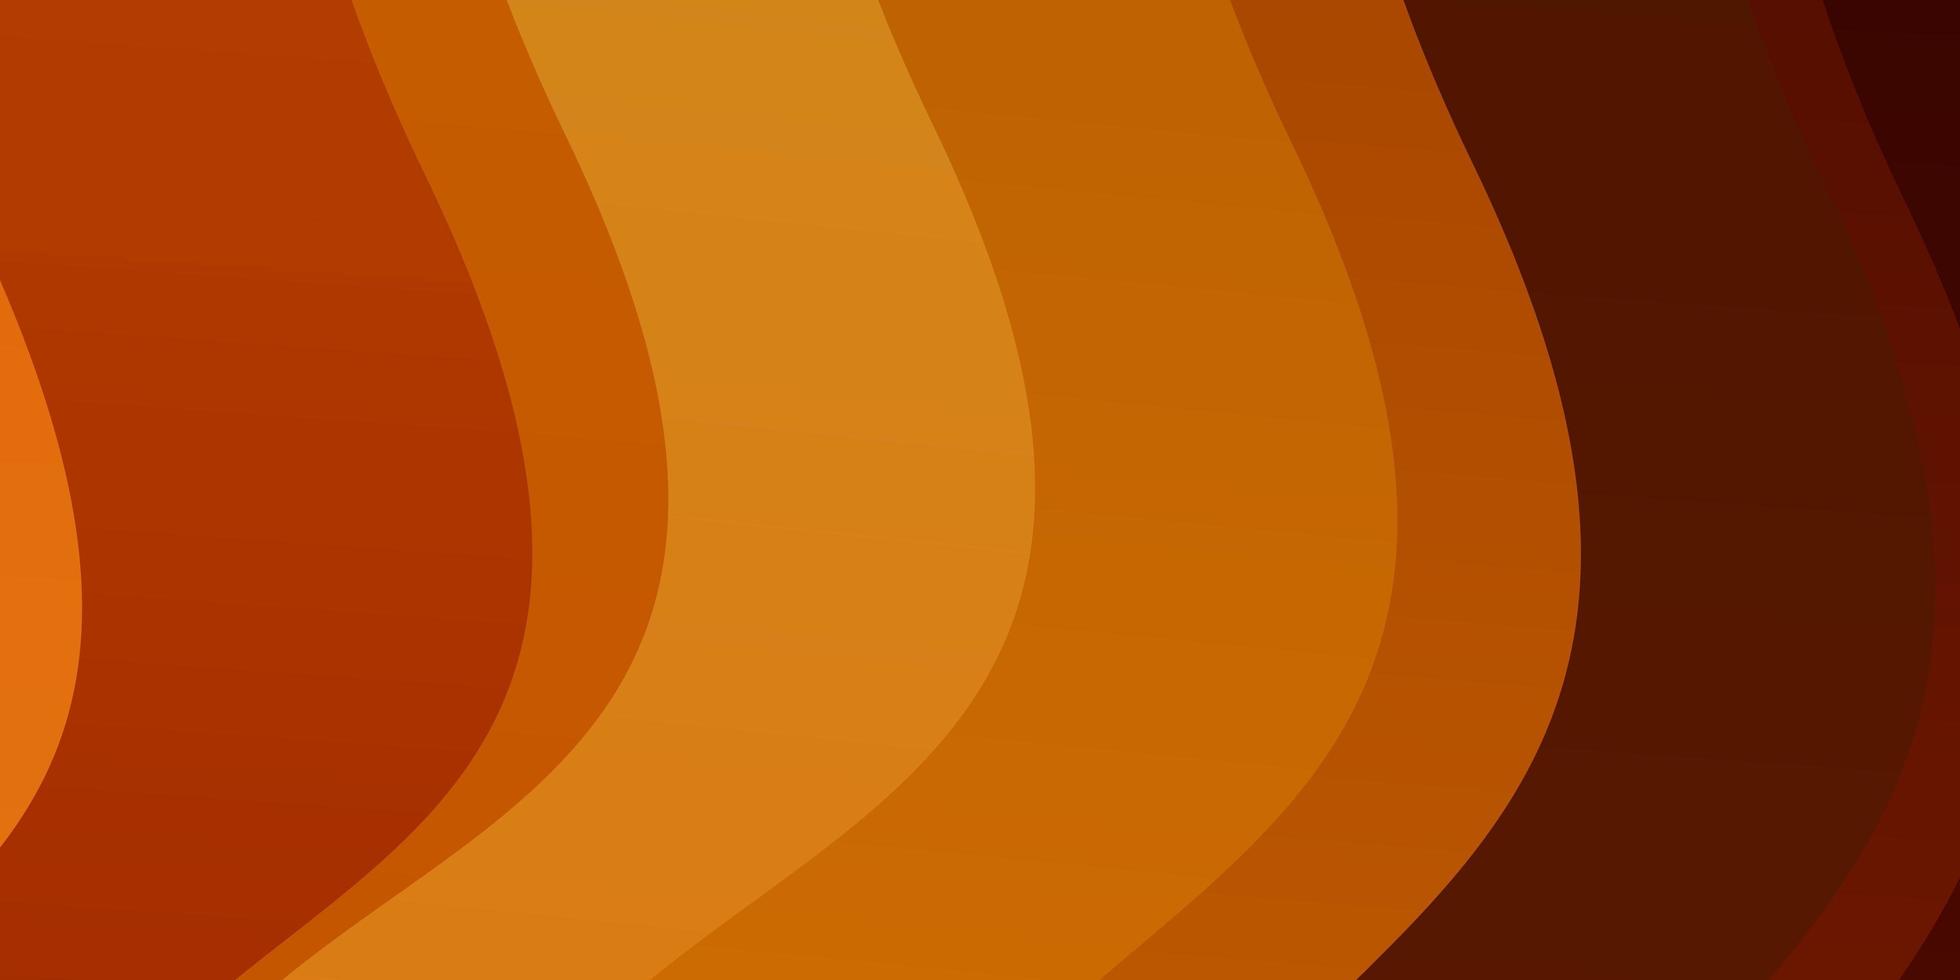 sfondo vettoriale arancione chiaro con curve.